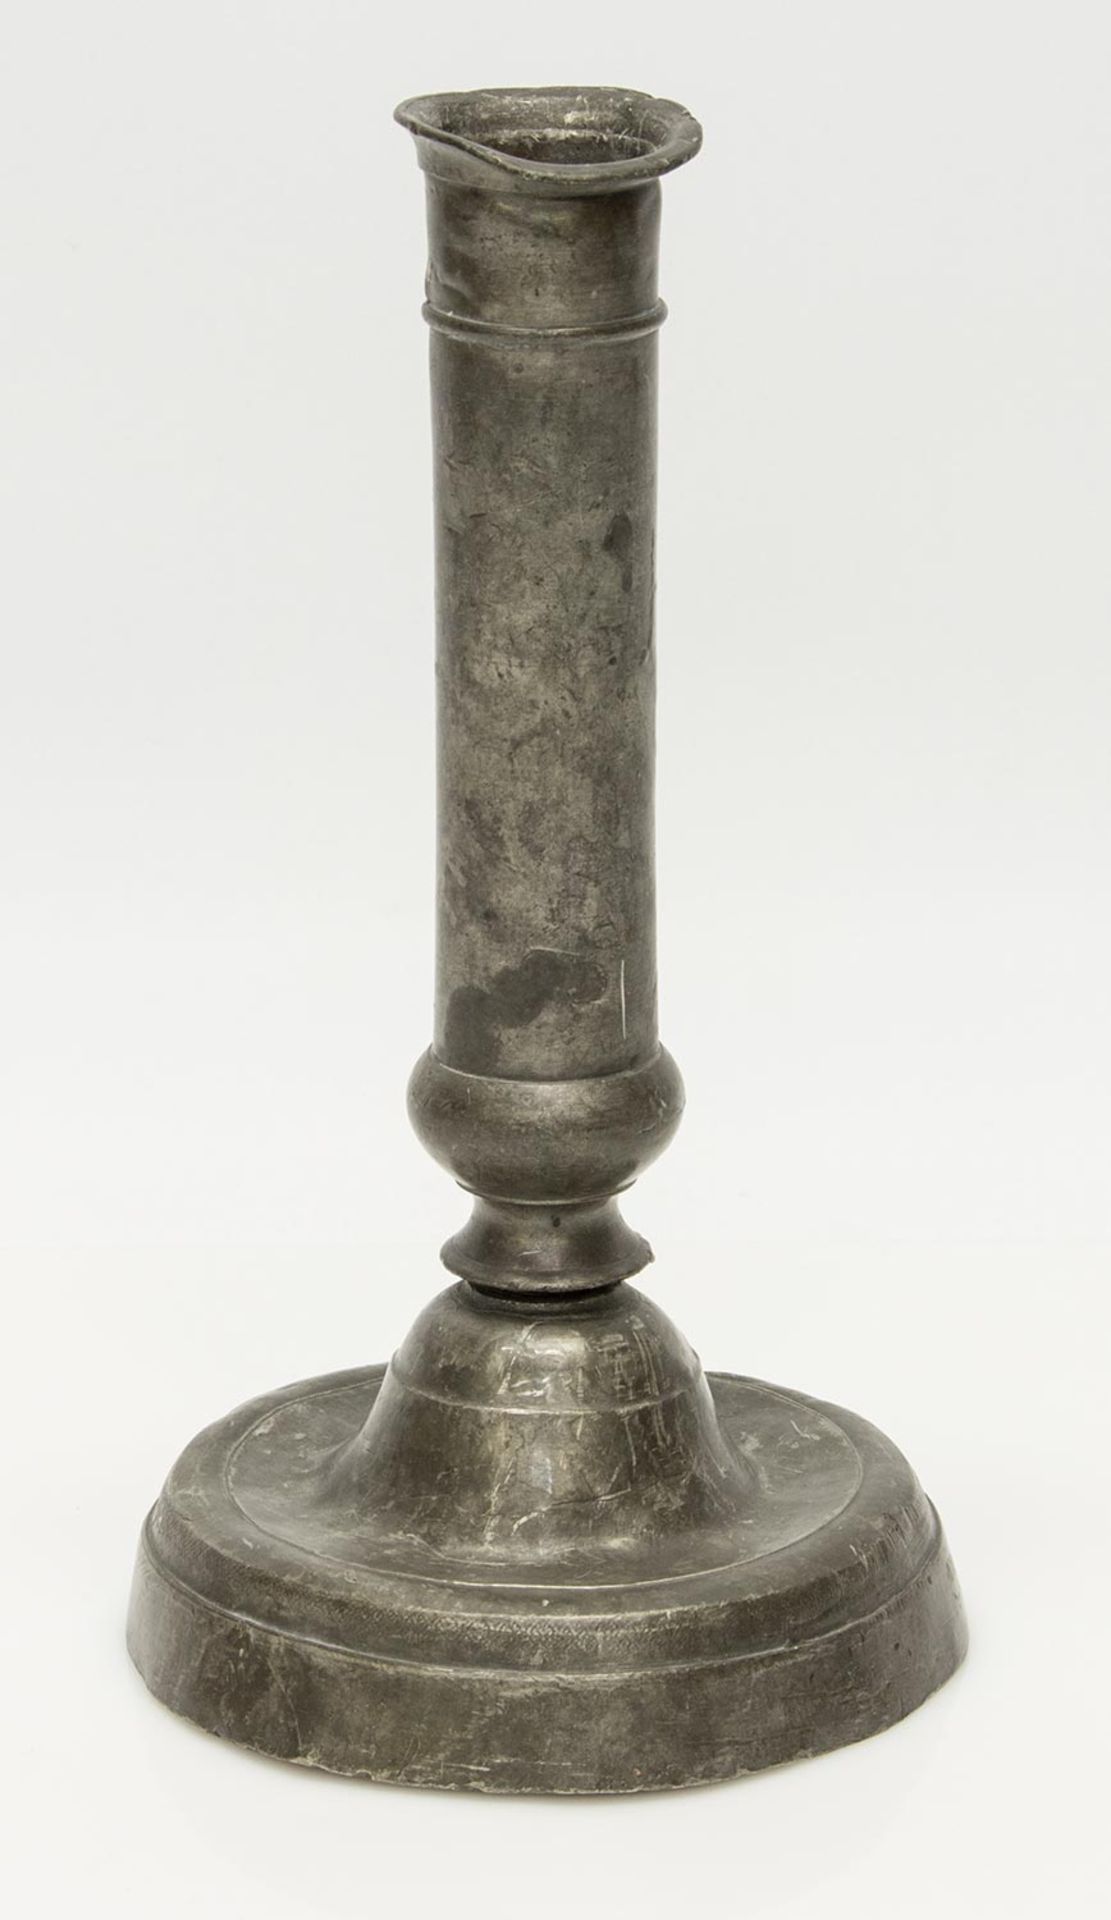 Barockleuchterum 1750, Zinn, Tellerförmiger Fuß mit geradem Schaft, H. 22 cm